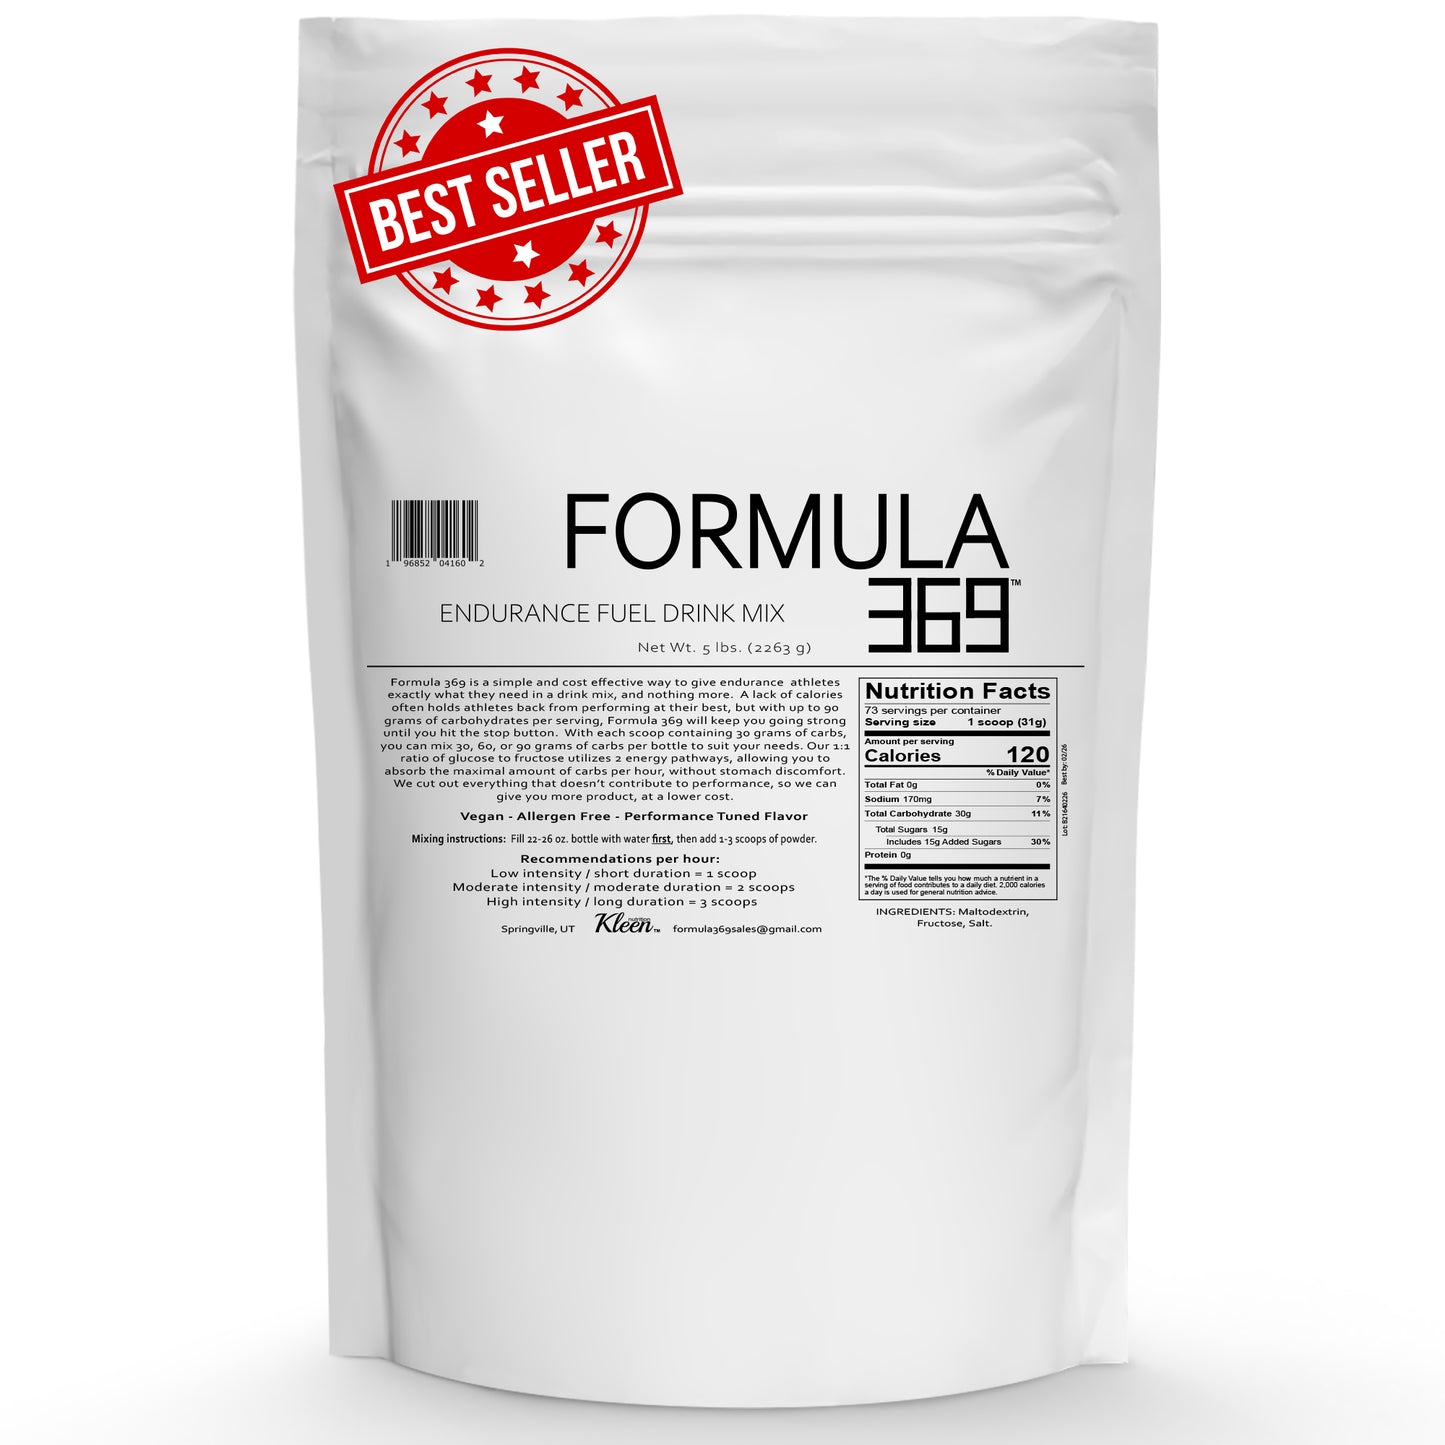 5 Pounds, 73 servings - Formula 369 Endurance Fuel Drink Mix